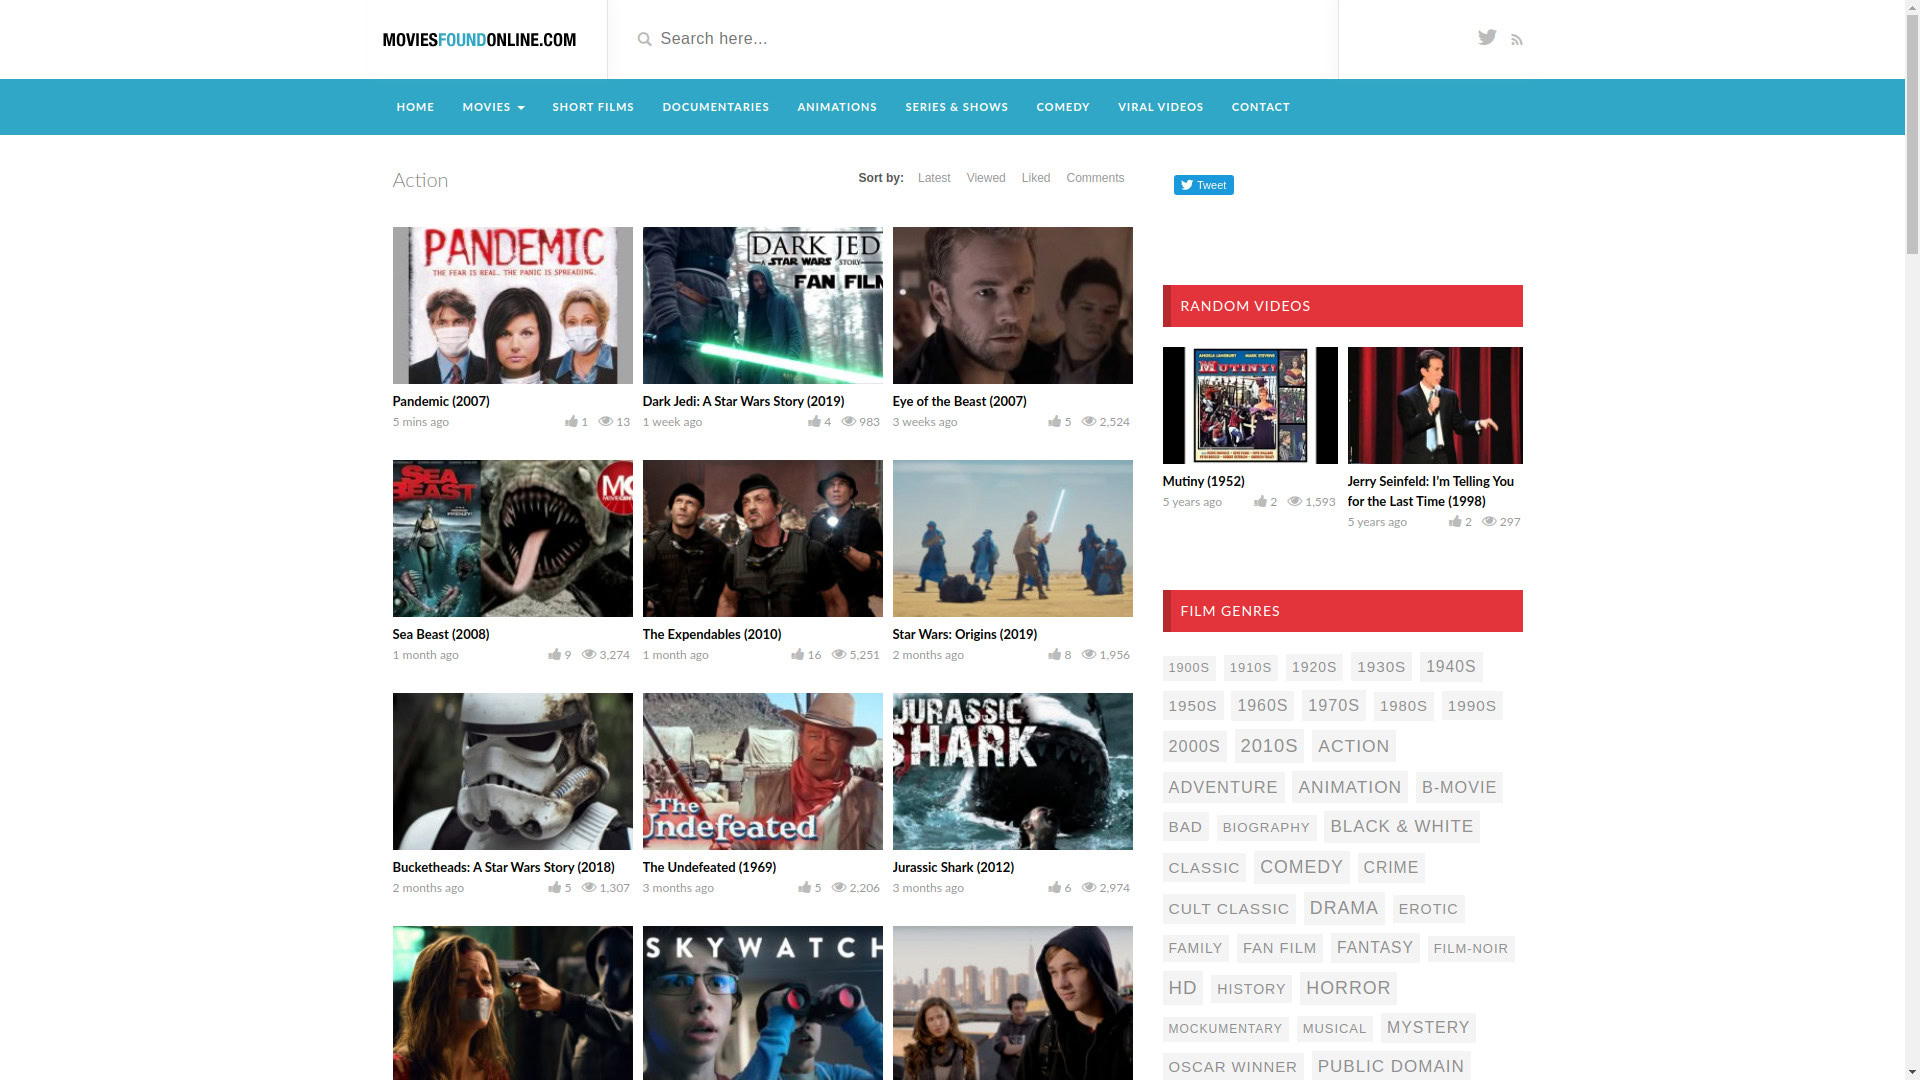 Movies Found Online homepage